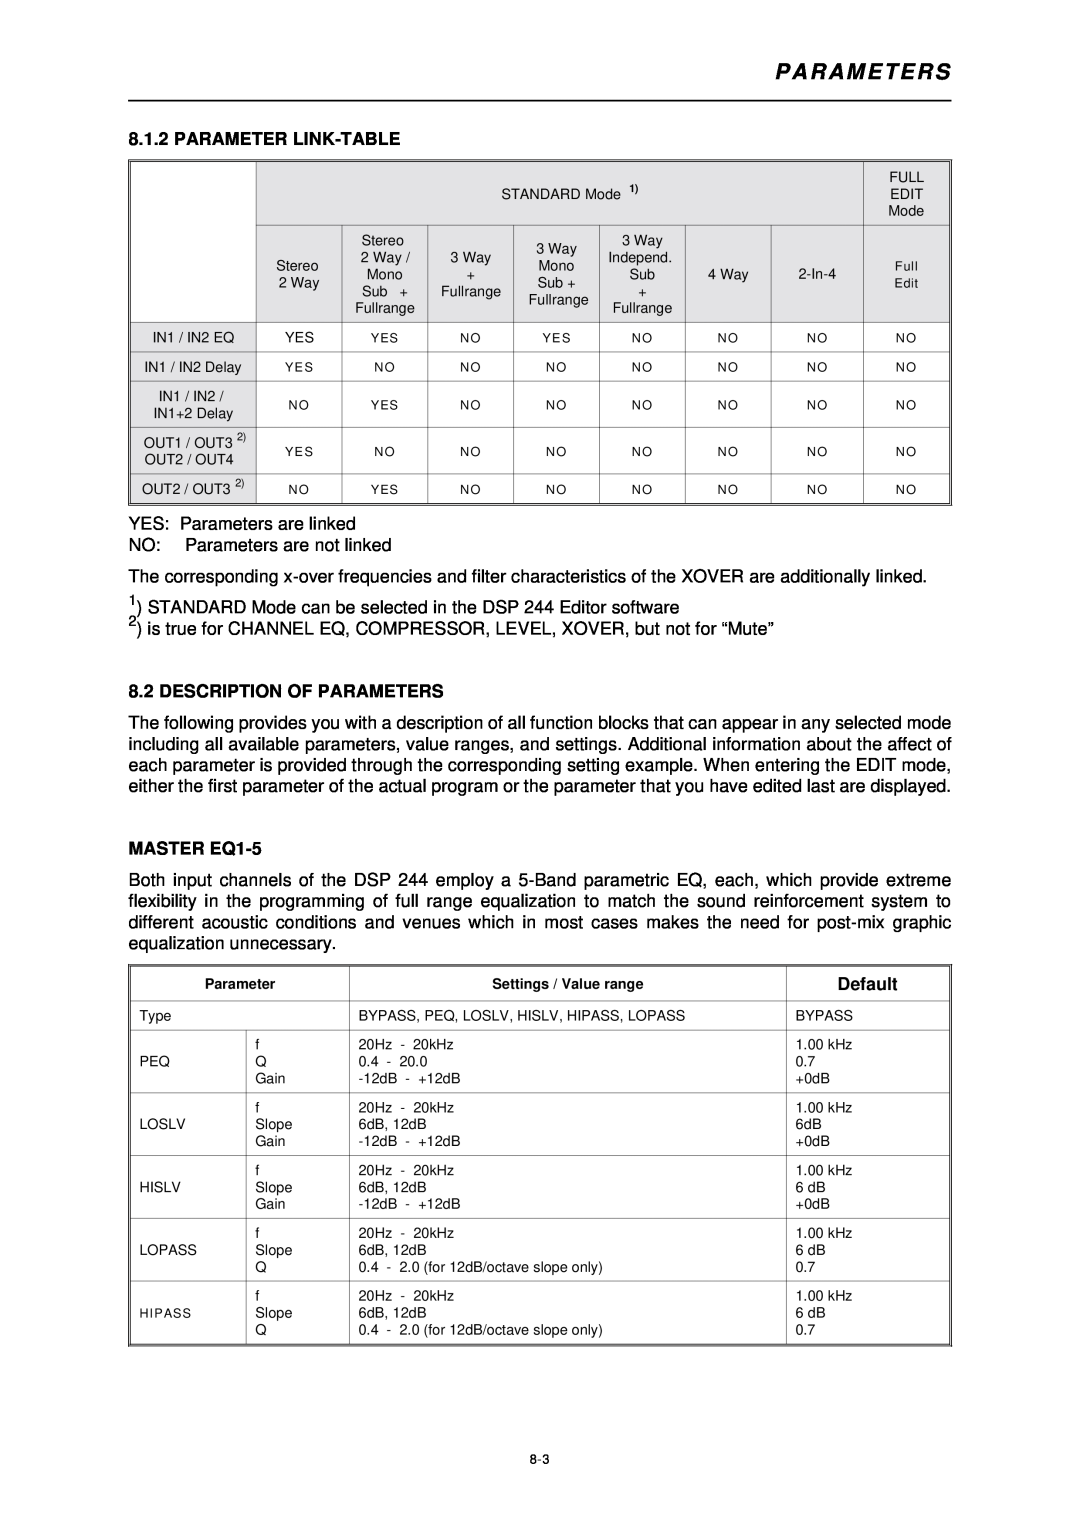 Dynacord DSP 244 owner manual Parameter Link-Table, Description Of Parameters, MASTER EQ1-5, Default, P A R A M E T E R S 